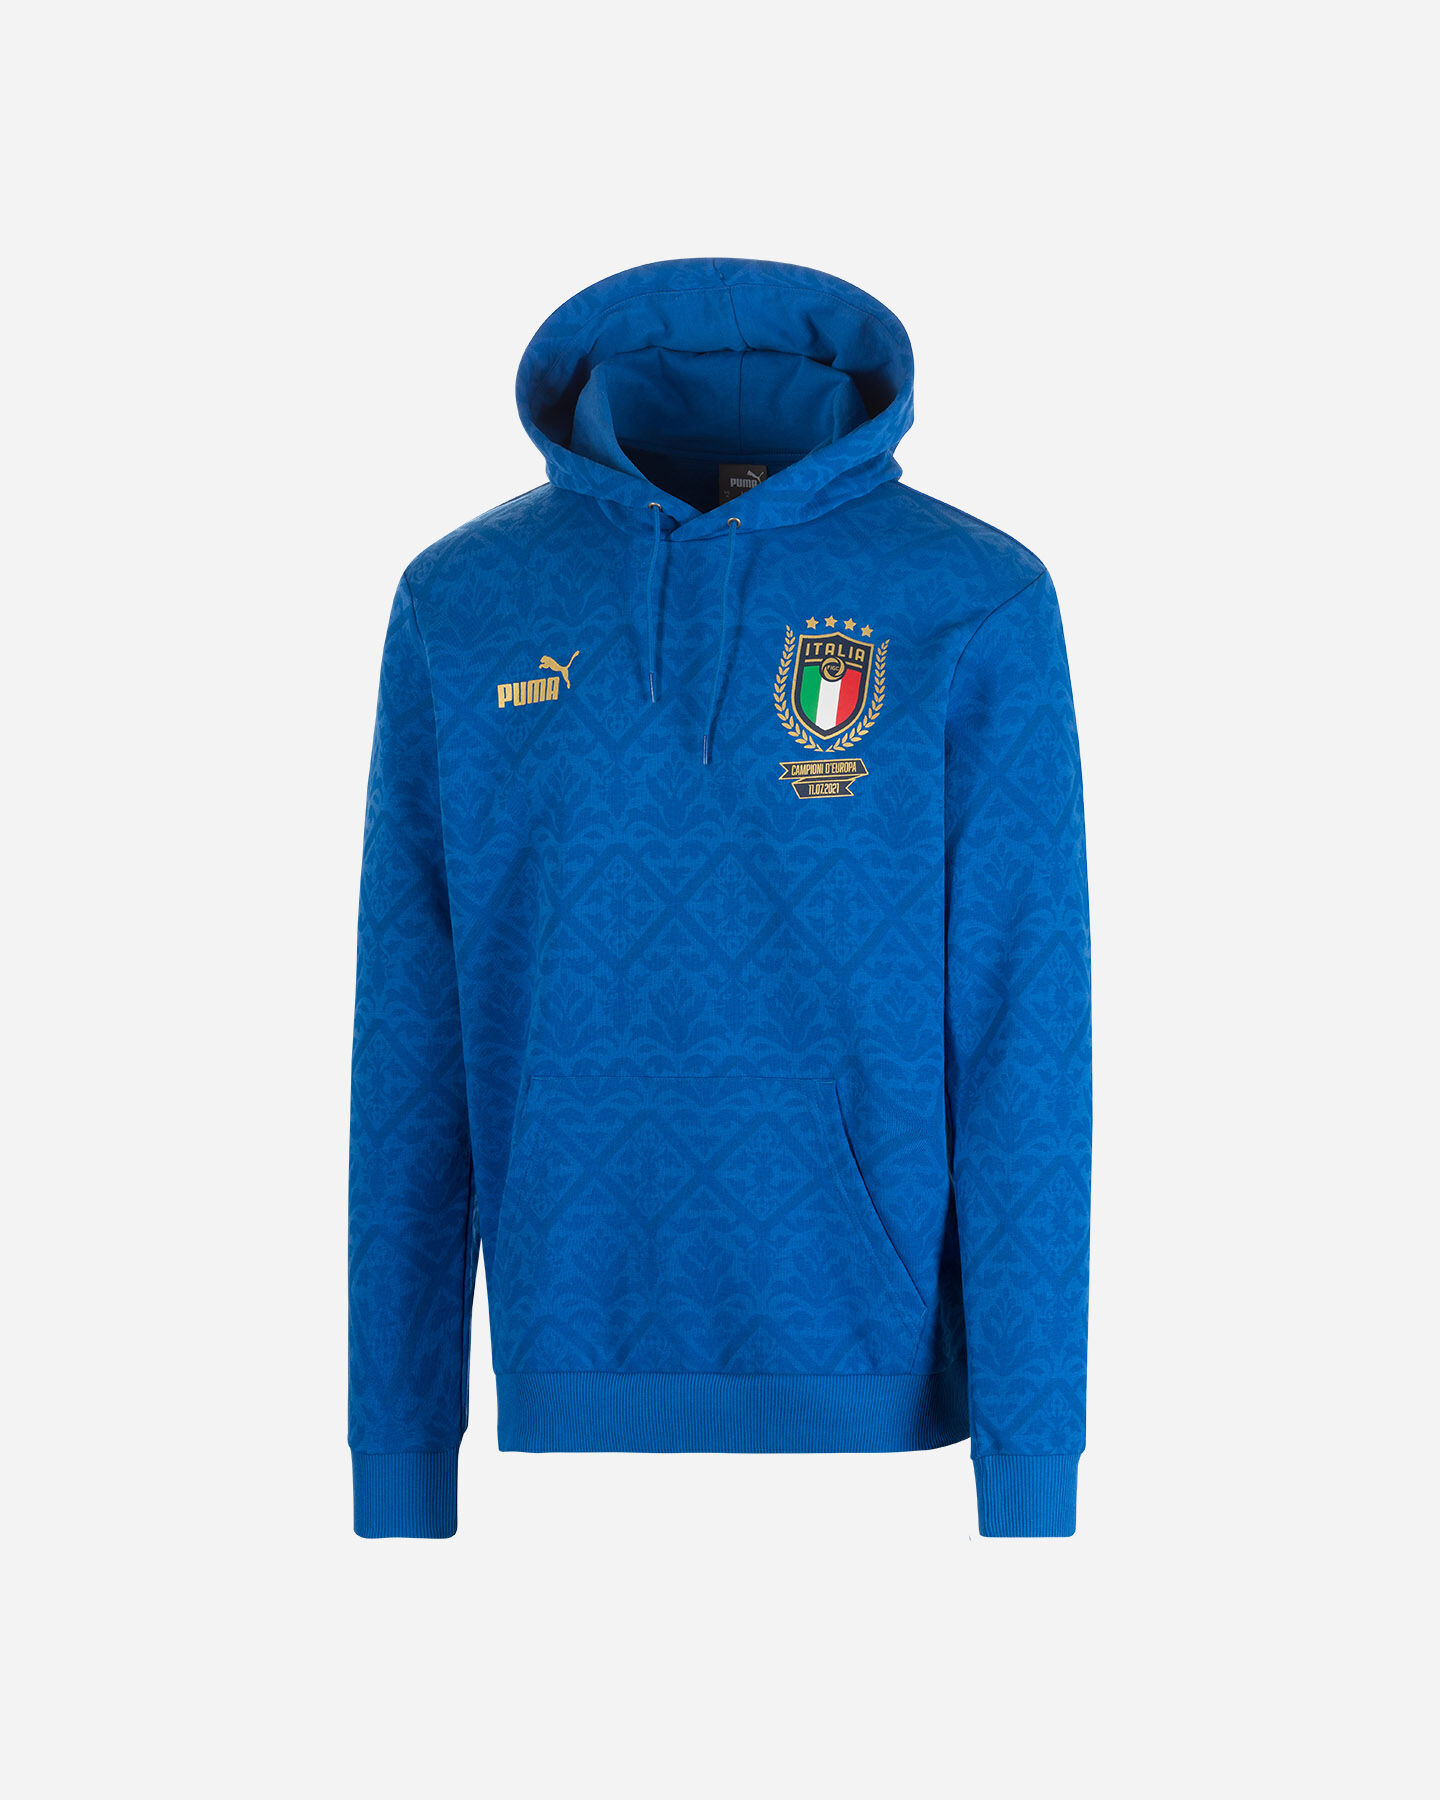  Abbigliamento calcio PUMA FIGC ITALIA GRAPHIC WINNER M S5484081|01|S scatto 0